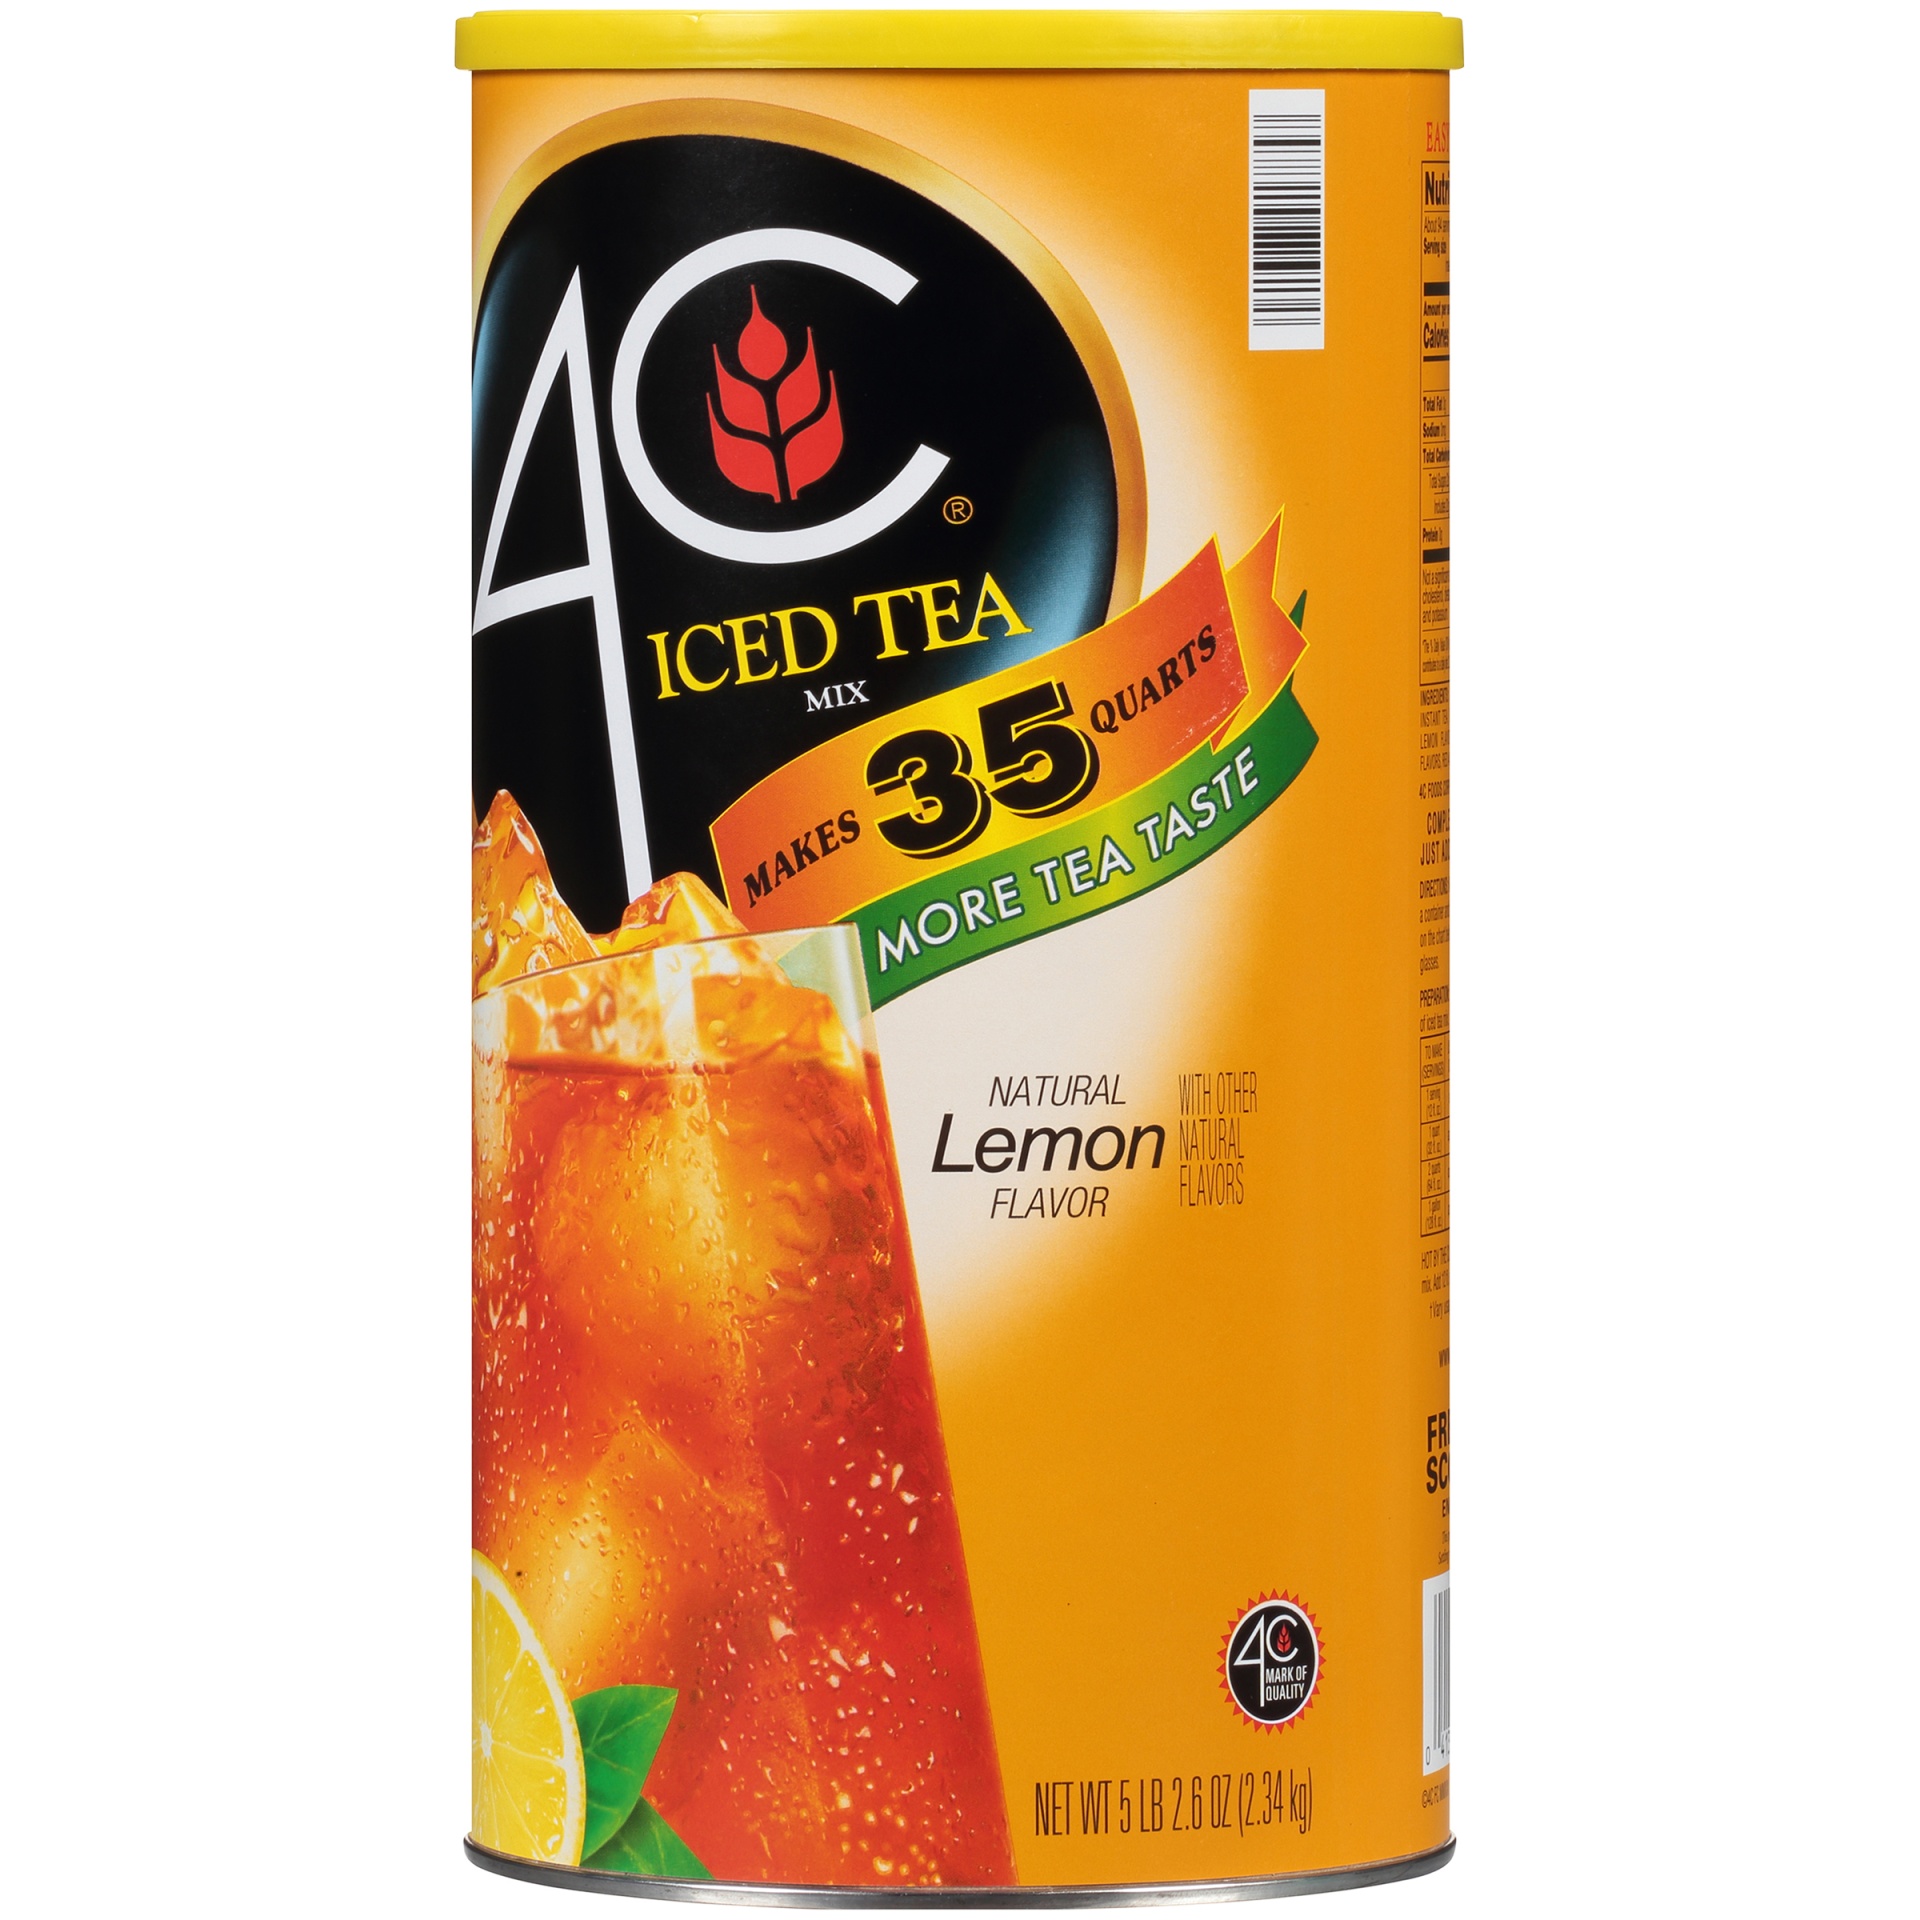 slide 5 of 8, 4C Natural Lemon Flavor Iced Tea Mix, 87 oz